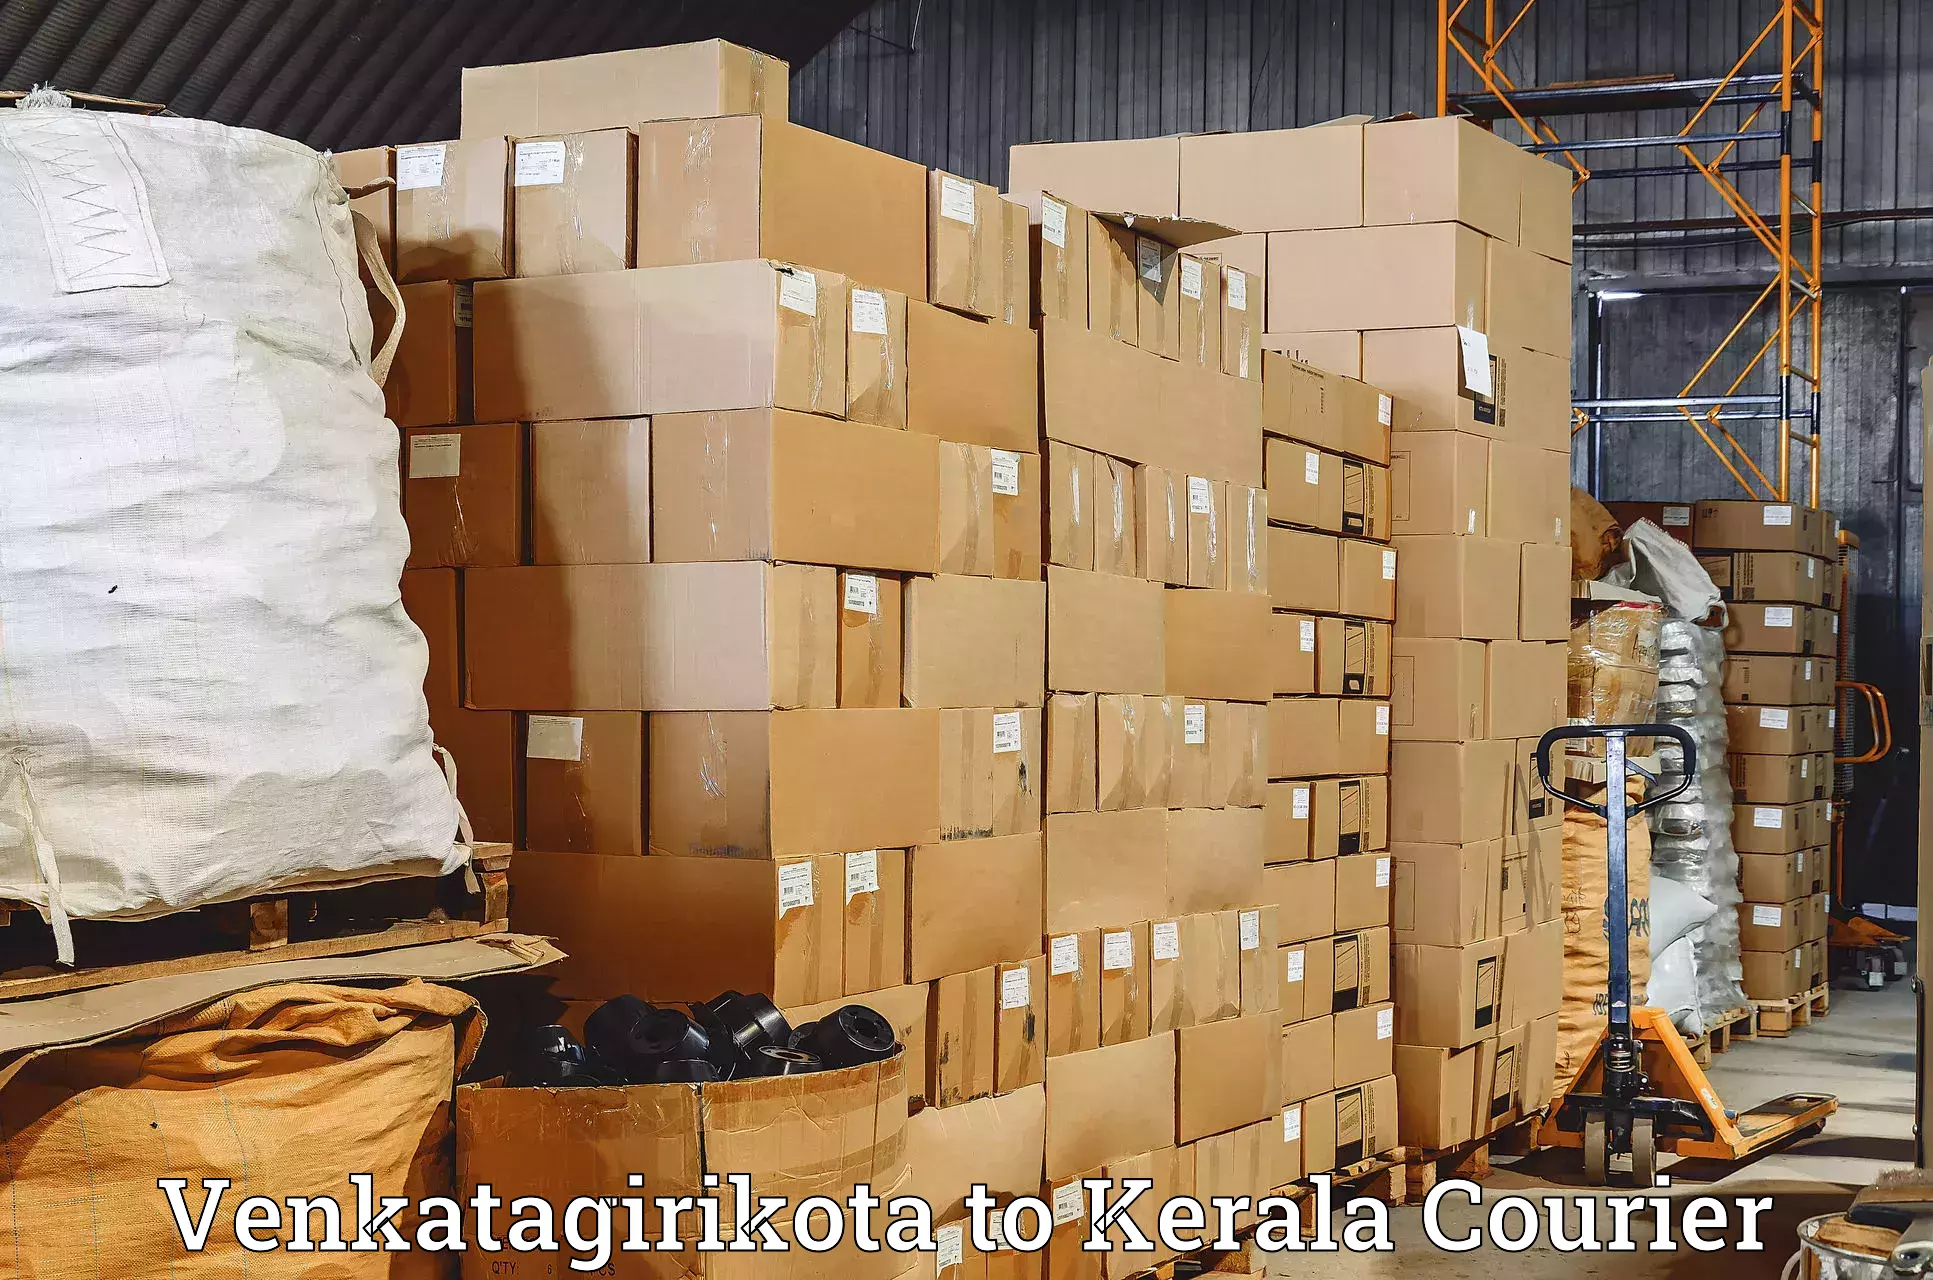 Reliable freight solutions Venkatagirikota to Parakkadavu